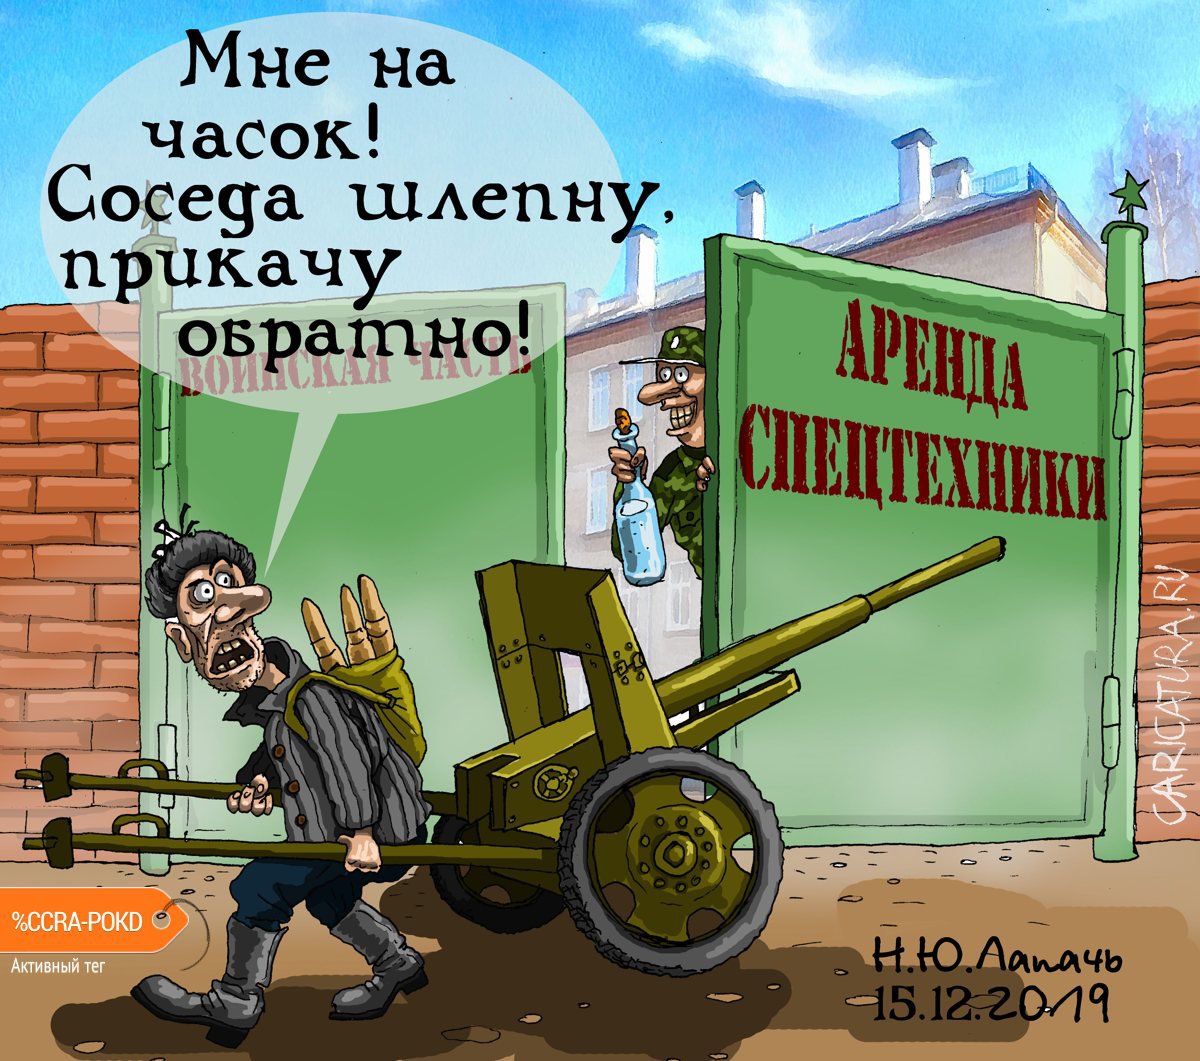 Карикатура "Сфера услуг", Теплый Телогрей